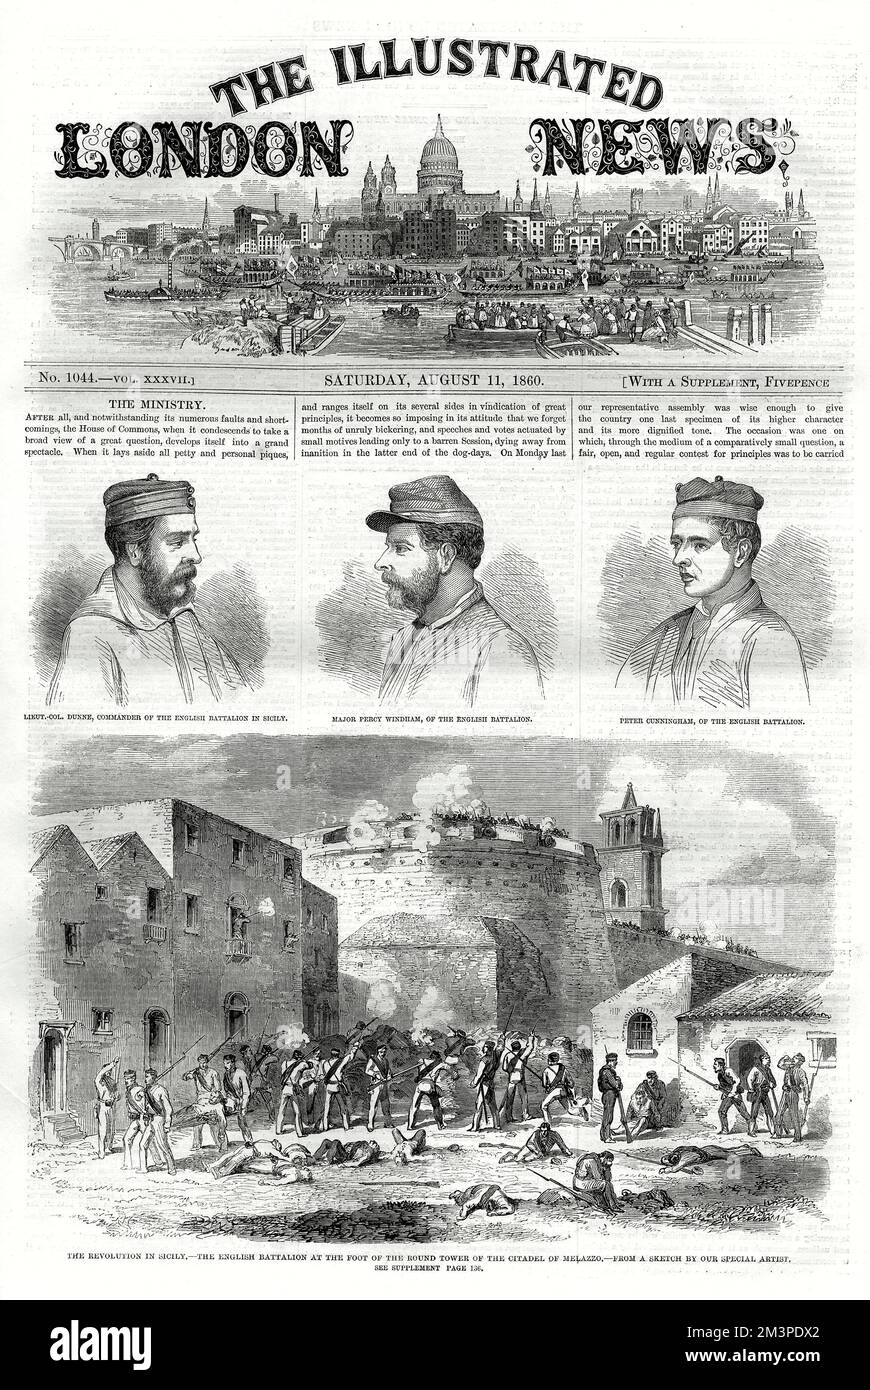 Während der Schlacht von Milazzo (Melazzo) auf Sizilien kämpfte ein englisches Bataillon auf GaribaIdis Seite am Fuße des runden Turms der Zitadelle der Stadt, das von den neapolitanischen Truppen verteidigt wurde. Letzteres hat sich schließlich ergeben, was zu einem Sieg für GaribaIdi führte. Datum: Juli 1860 Stockfoto